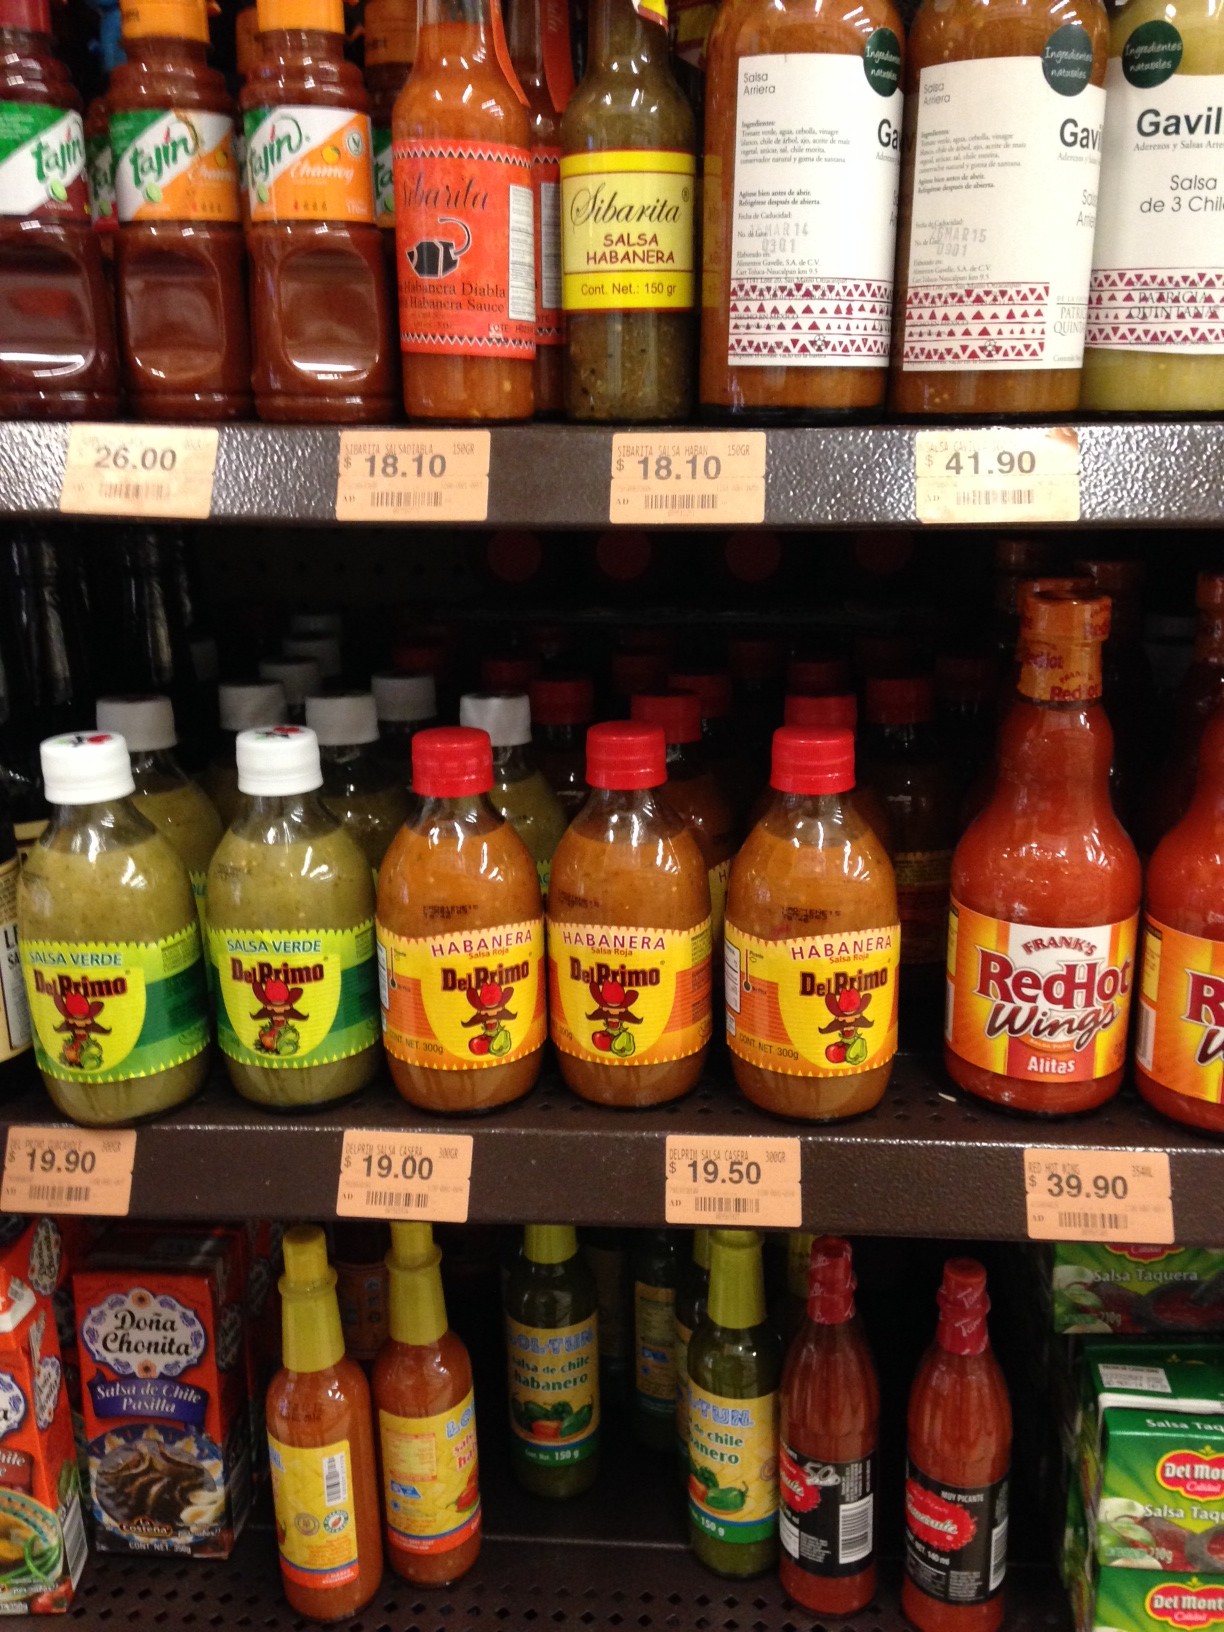 Variedades de "salsas" no supermercado (uma ótima opção para comprar pimentas com preços menores)